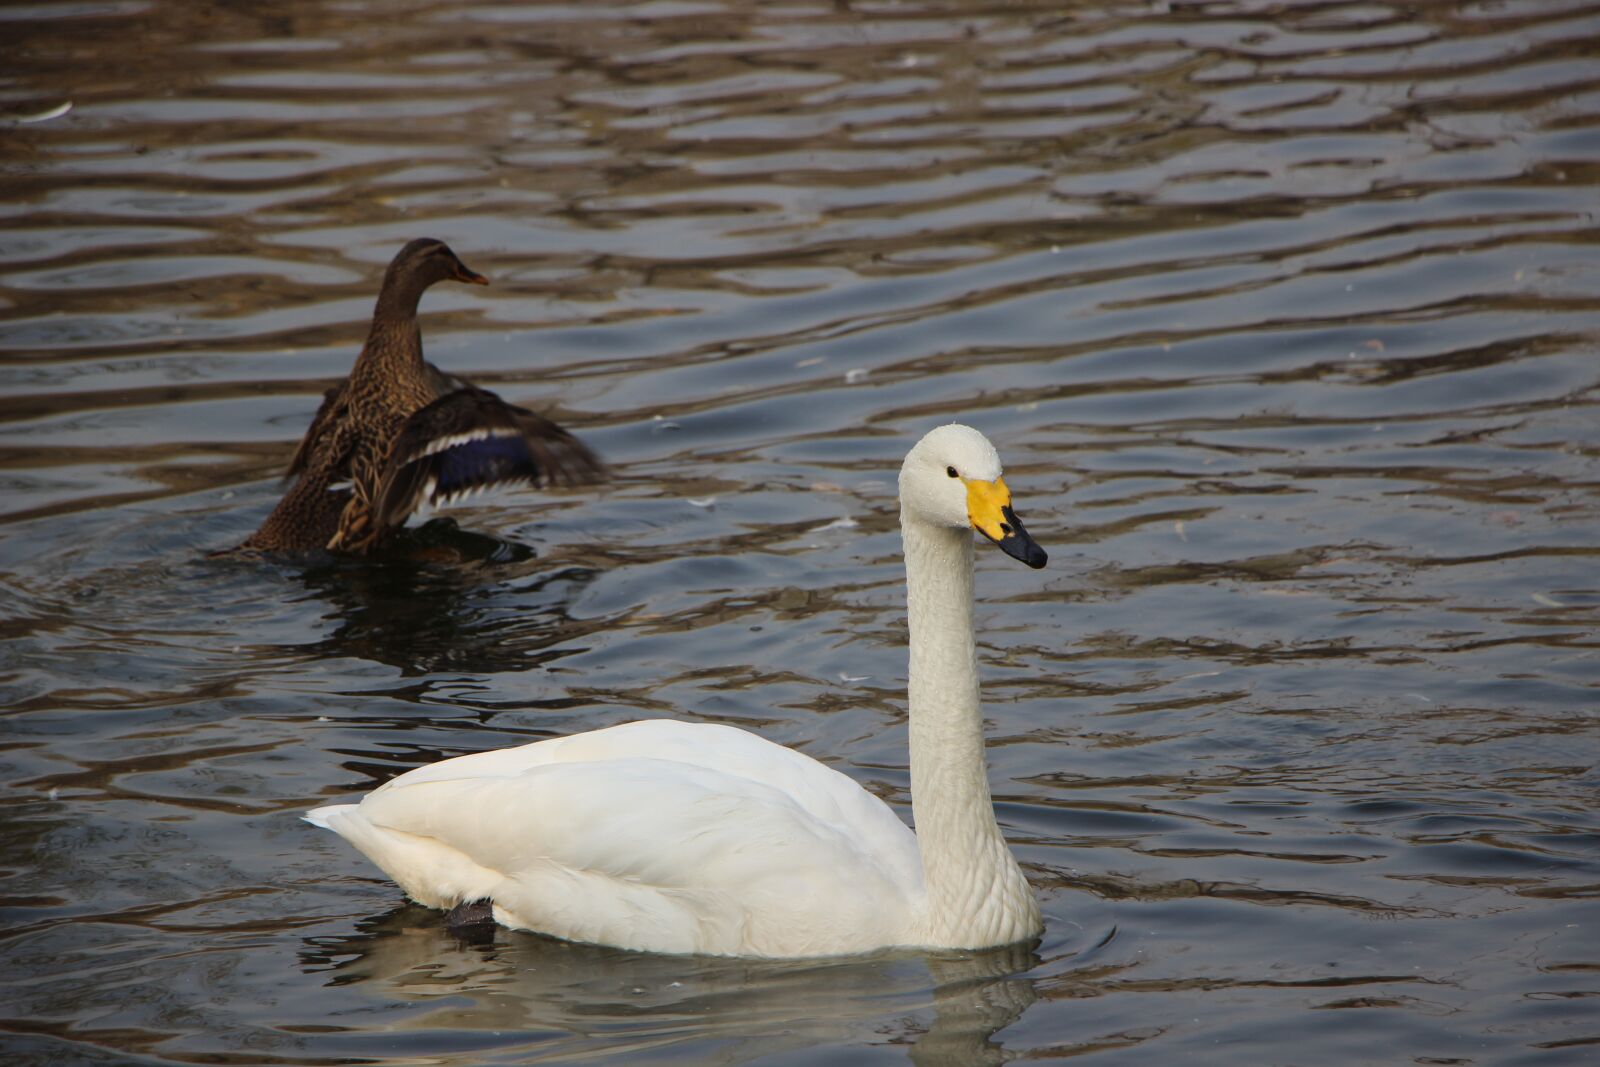 Canon EOS 600D (Rebel EOS T3i / EOS Kiss X5) sample photo. Bird, water bird, swan photography